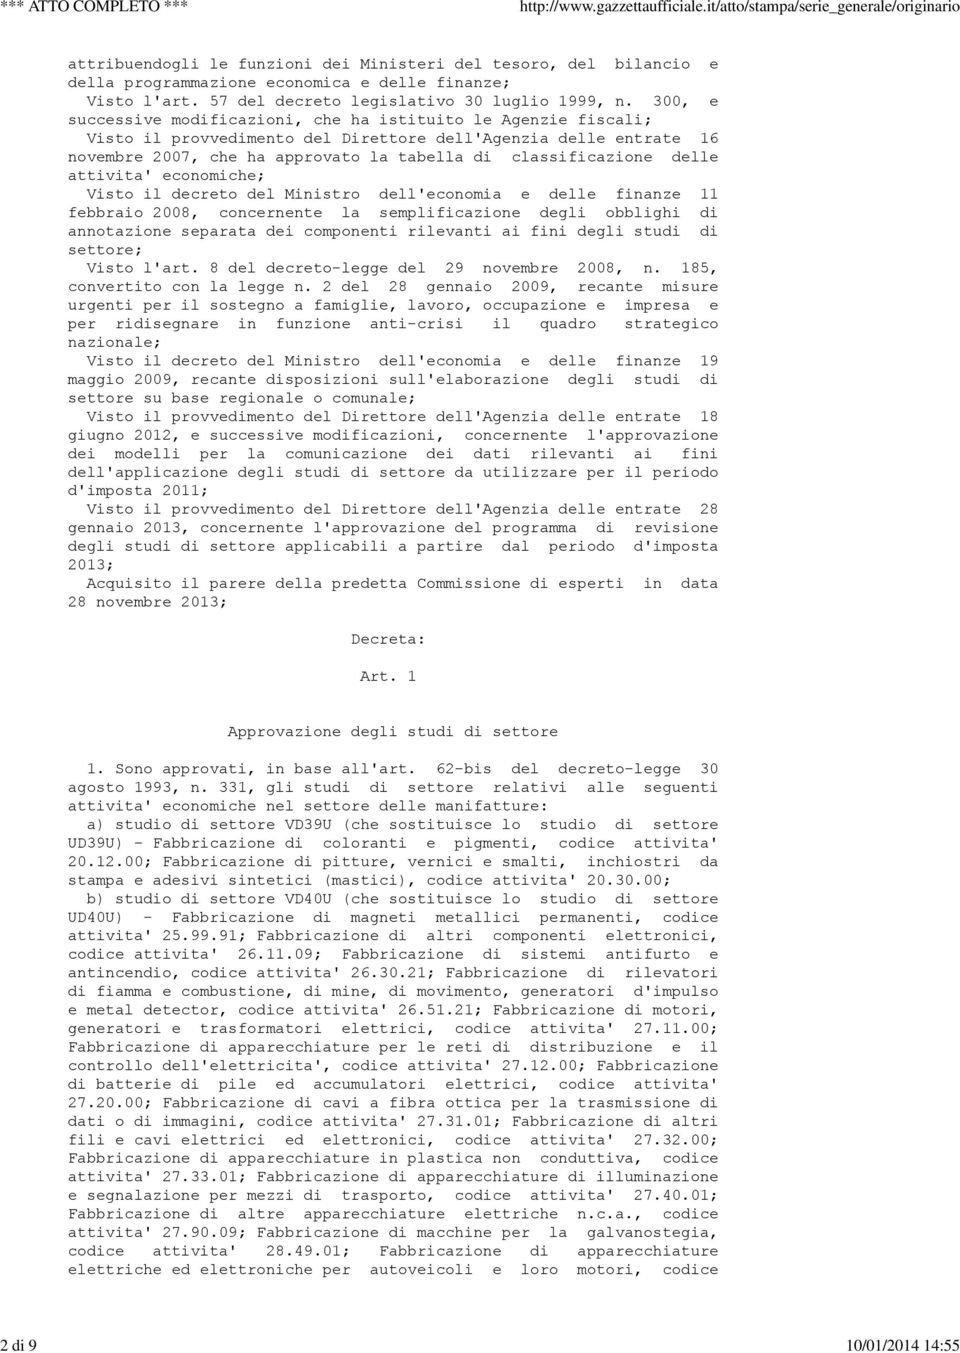 delle attivita' economiche; Visto il decreto del Ministro dell'economia e delle finanze 11 febbraio 2008, concernente la semplificazione degli obblighi di annotazione separata dei componenti